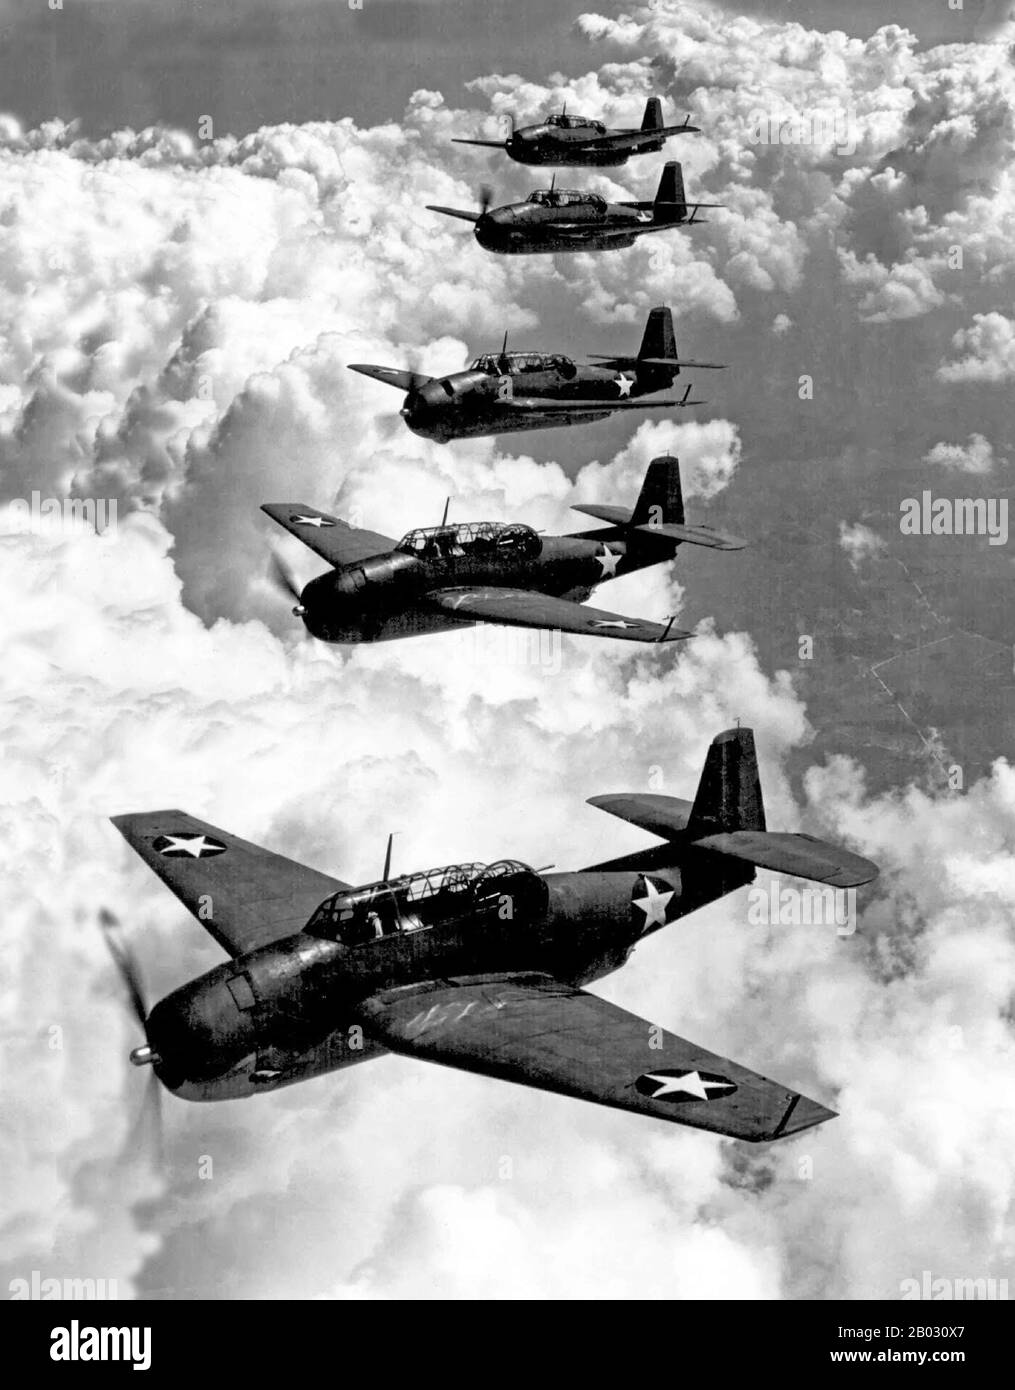 El Grumman TBF Avenger (designado TBM para aviones fabricados por General Motors) fue un bombardero de torpedo desarrollado inicialmente para la Marina y el cuerpo de Infantería de Marina de los Estados Unidos, y eventualmente utilizado por varios servicios de aviación aérea y naval en todo el mundo. El vengador entró en servicio en los Estados Unidos en 1942, y vio la acción por primera vez durante la Batalla de Midway. A pesar de la pérdida de cinco de los seis Vengadores en su debut en combate, sobrevivió en el servicio para convertirse en uno de los más destacados bombarderos de torpedo de la Segunda Guerra Mundial Muy modificado después de la guerra, permaneció en uso hasta los años sesenta. Foto de stock